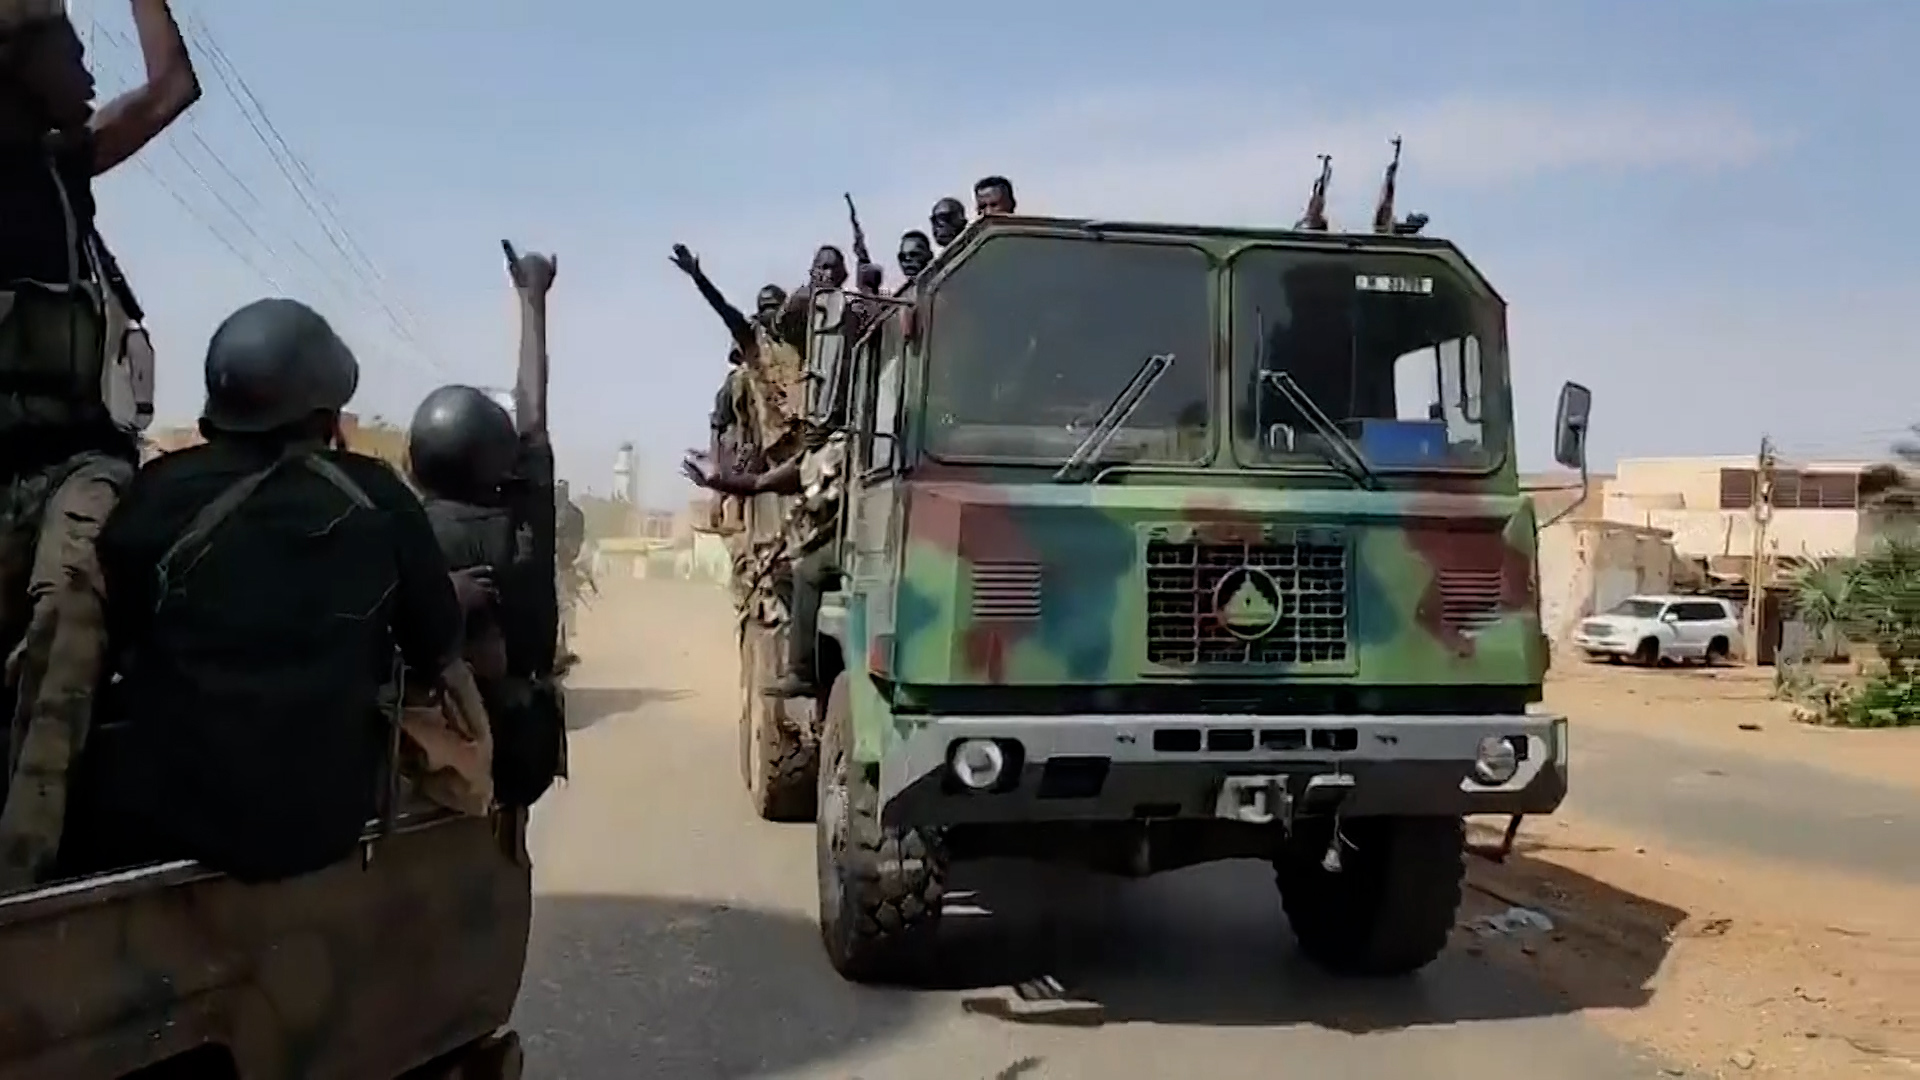 الجيش السوداني يؤكد حرصه على المدنيين ويدعوهم لتجنب مناطق القتال | أخبار – البوكس نيوز